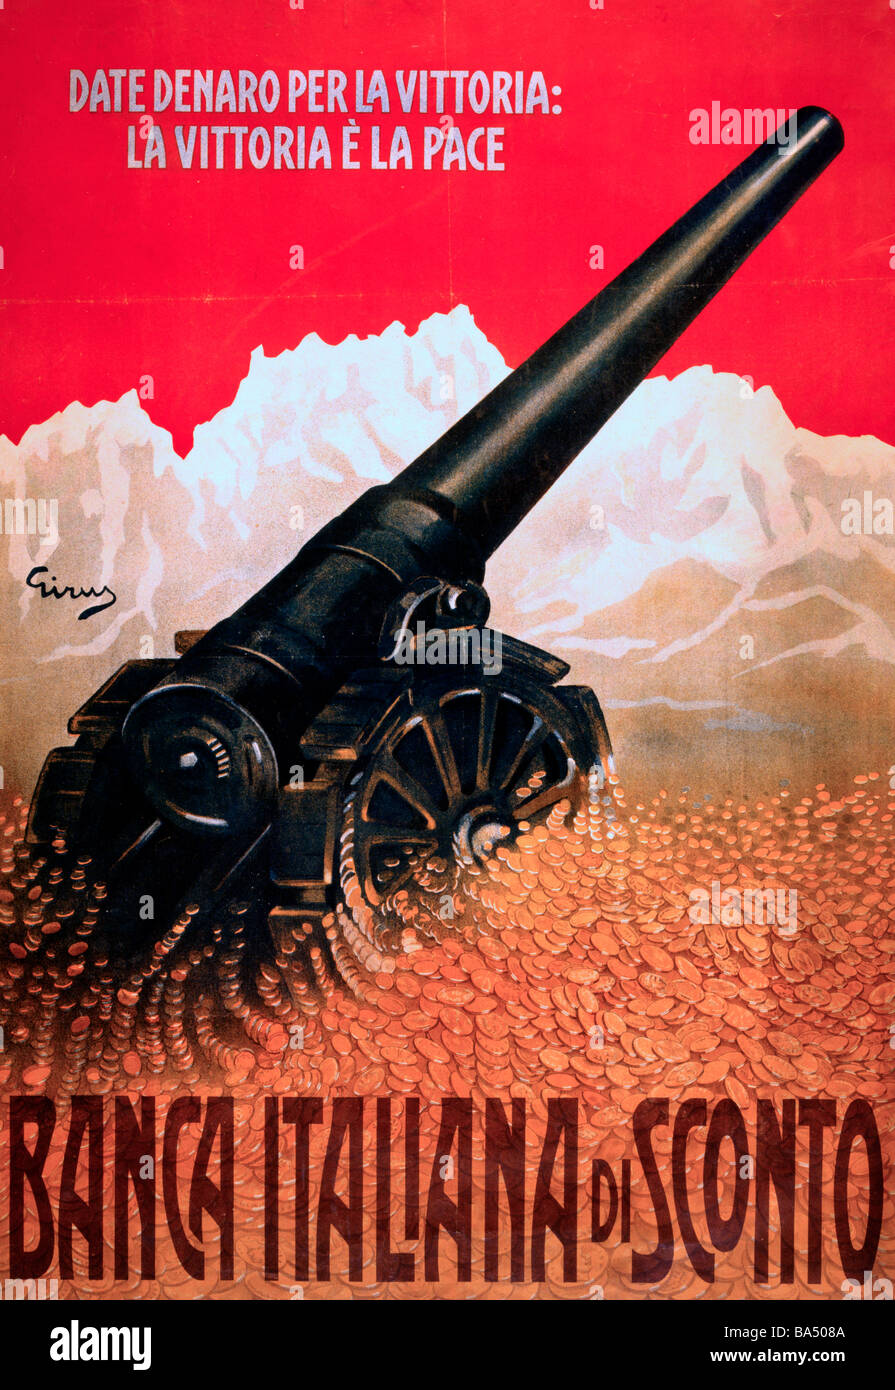 Cannon, reposant sur un tas de pièces, vers le haut, vers les montagnes. La Première Guerre mondiale Poster italien Banque D'Images